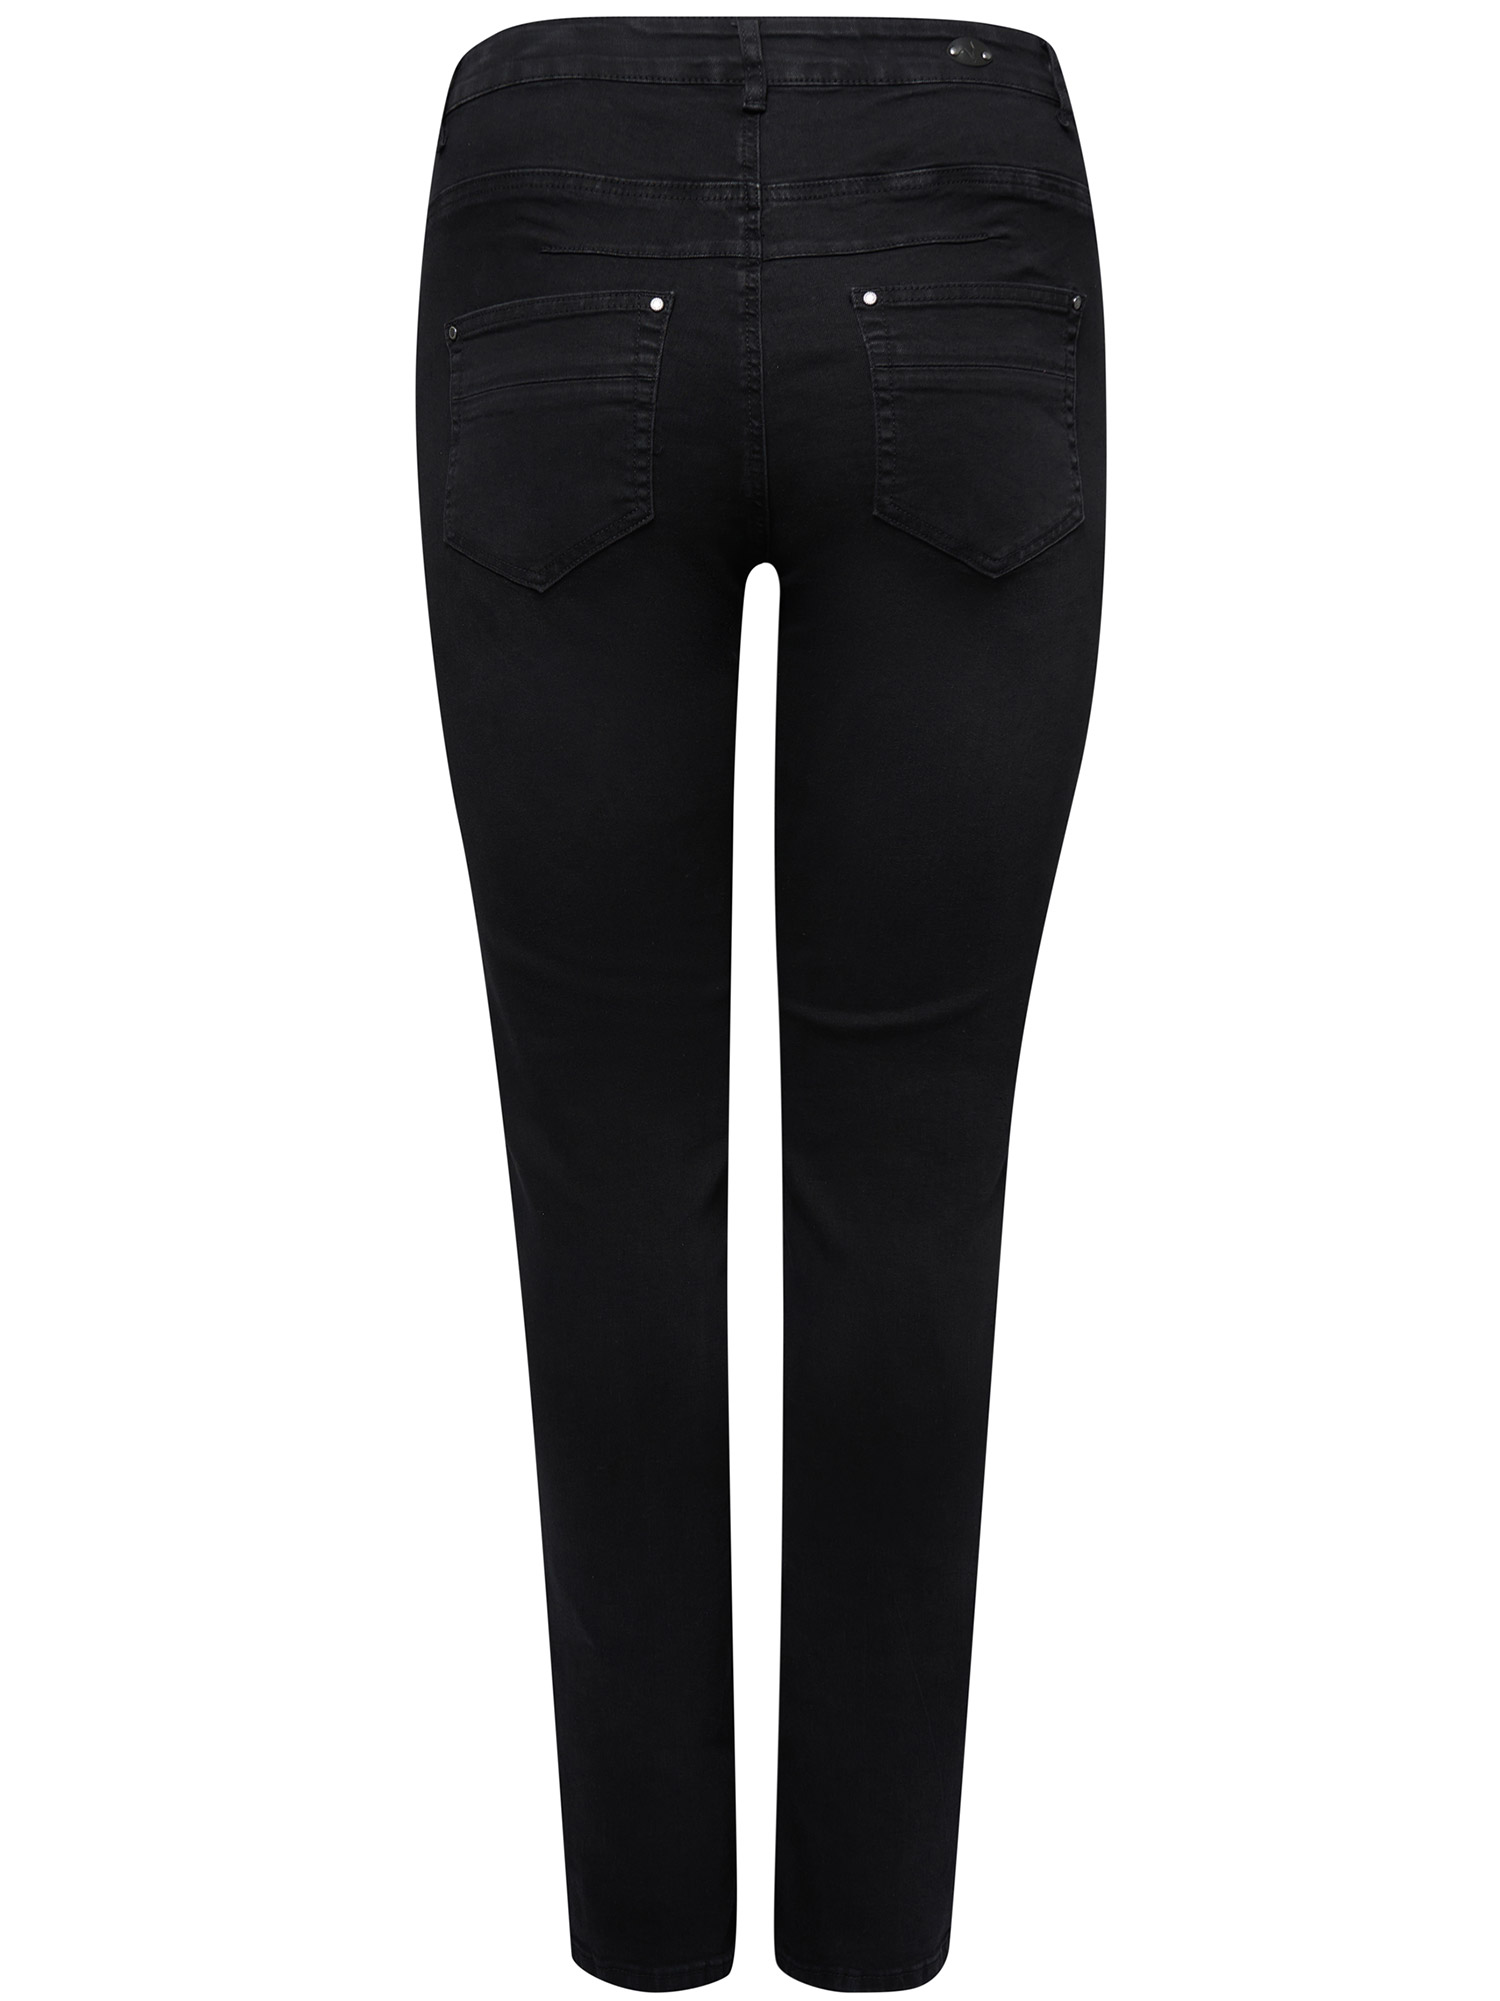 MONACO - Sorte strækbar jeans med høj talje fra Adia